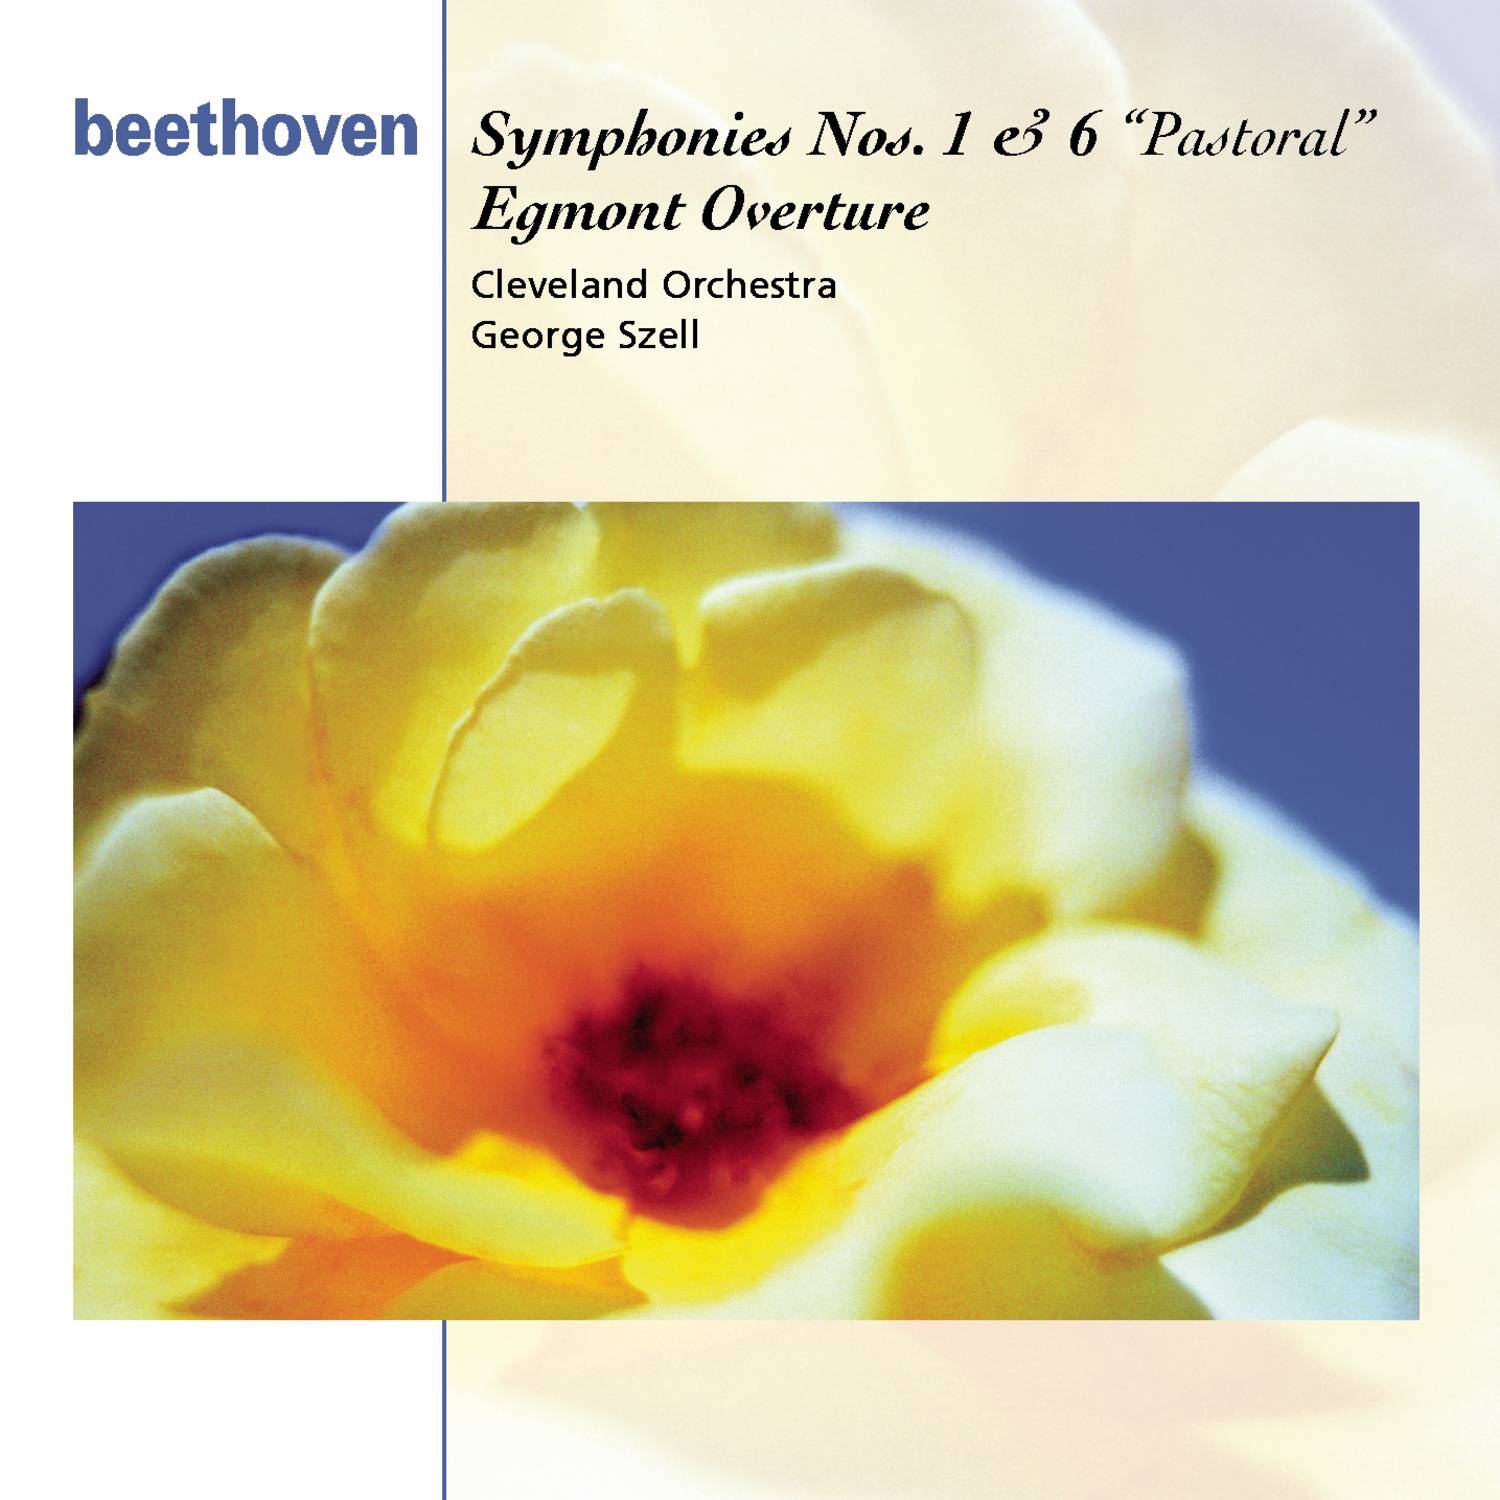 Symphony No. 1 in C Major, Op. 21: III. Menuetto - Allegro molto e vivace